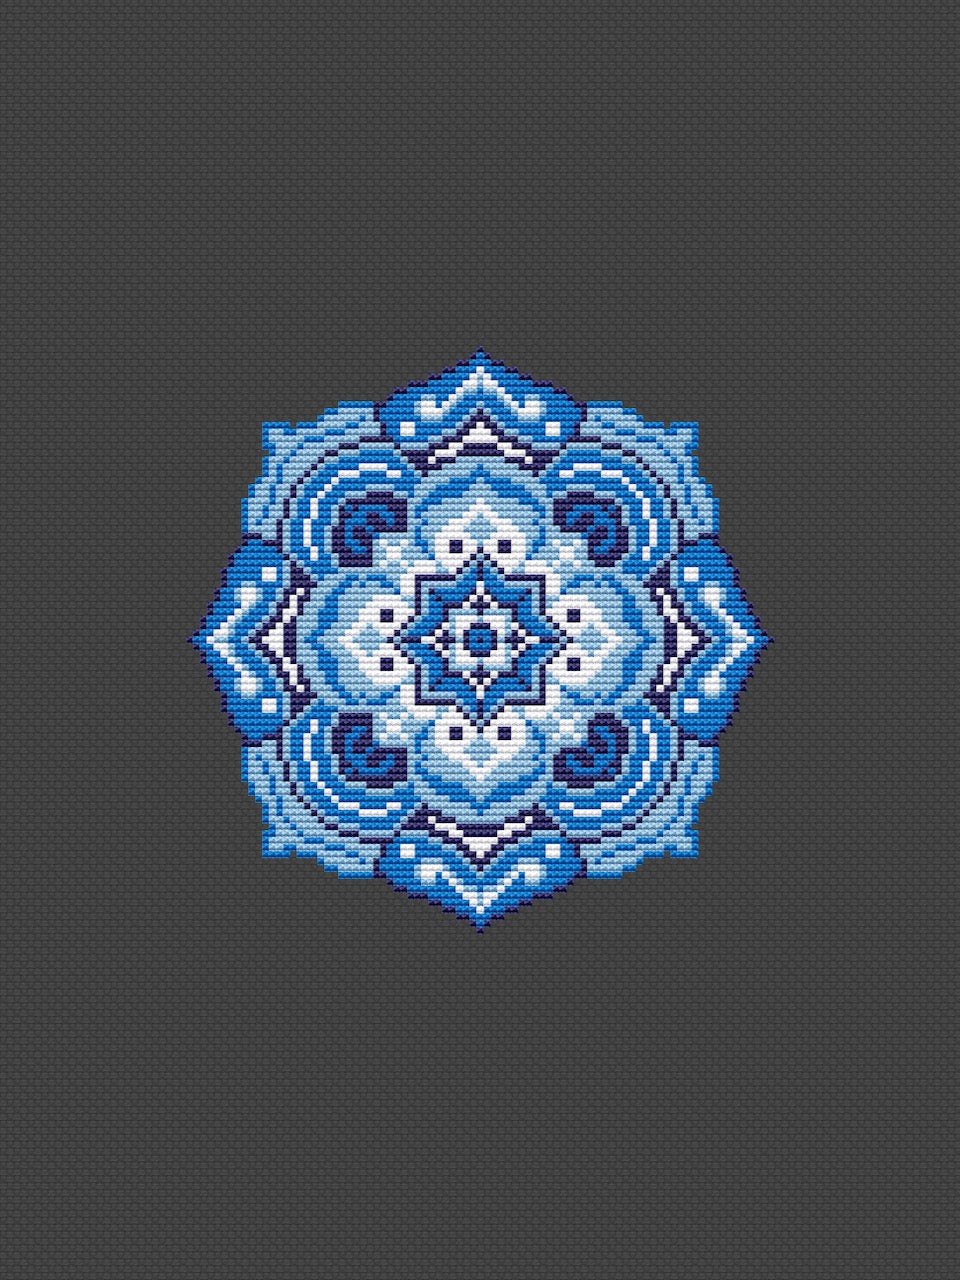 mandala blue cross stitch pattern-4